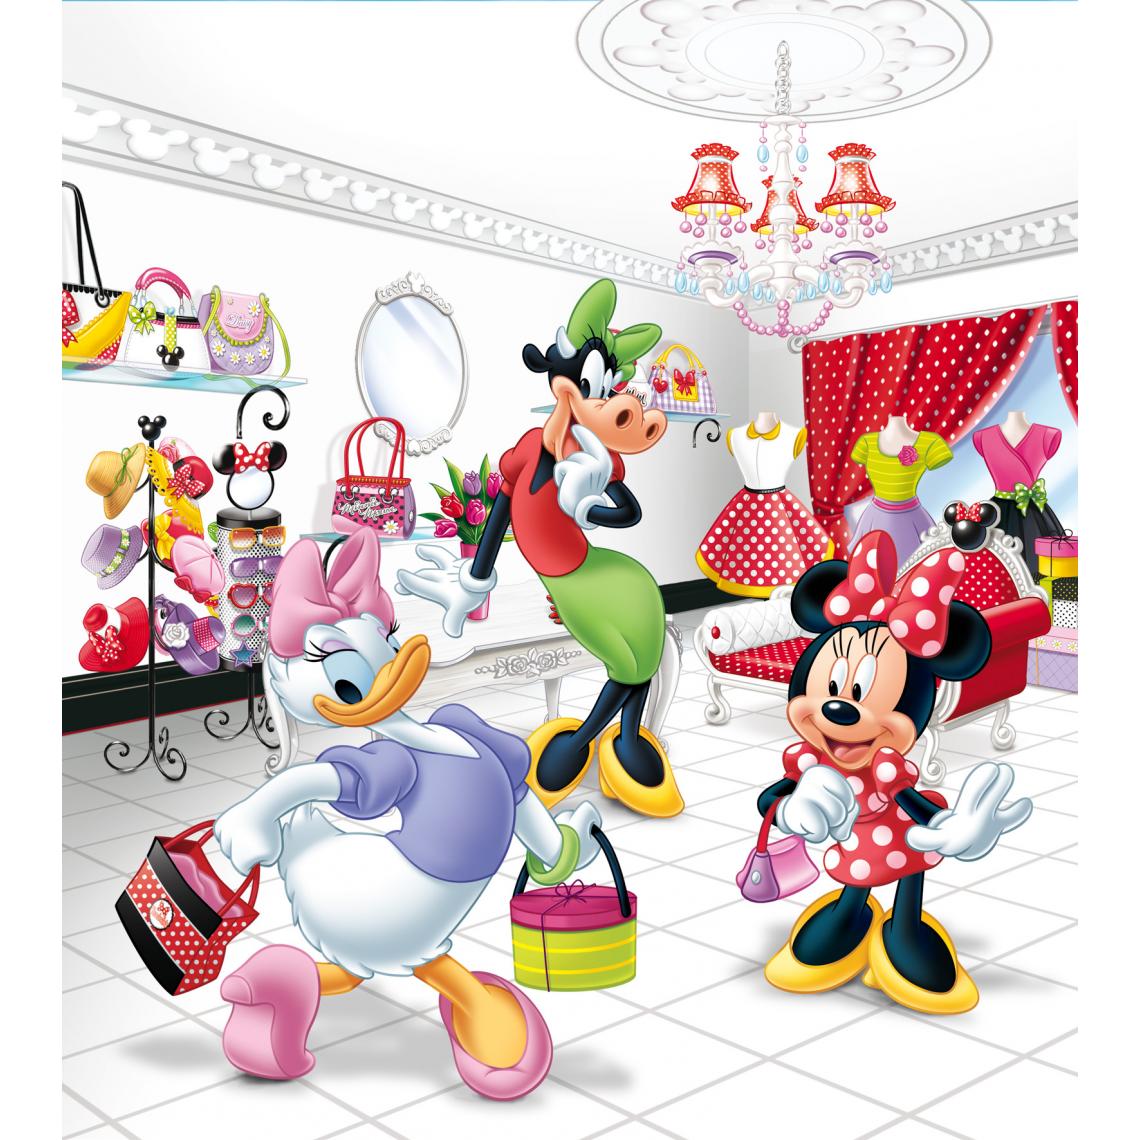 Disney Montres - Disney papier peint panoramique Minnie Mouse & Daisy Duck rouge, rose et jaune - 600611 - 180 x 202 cm - Papier peint